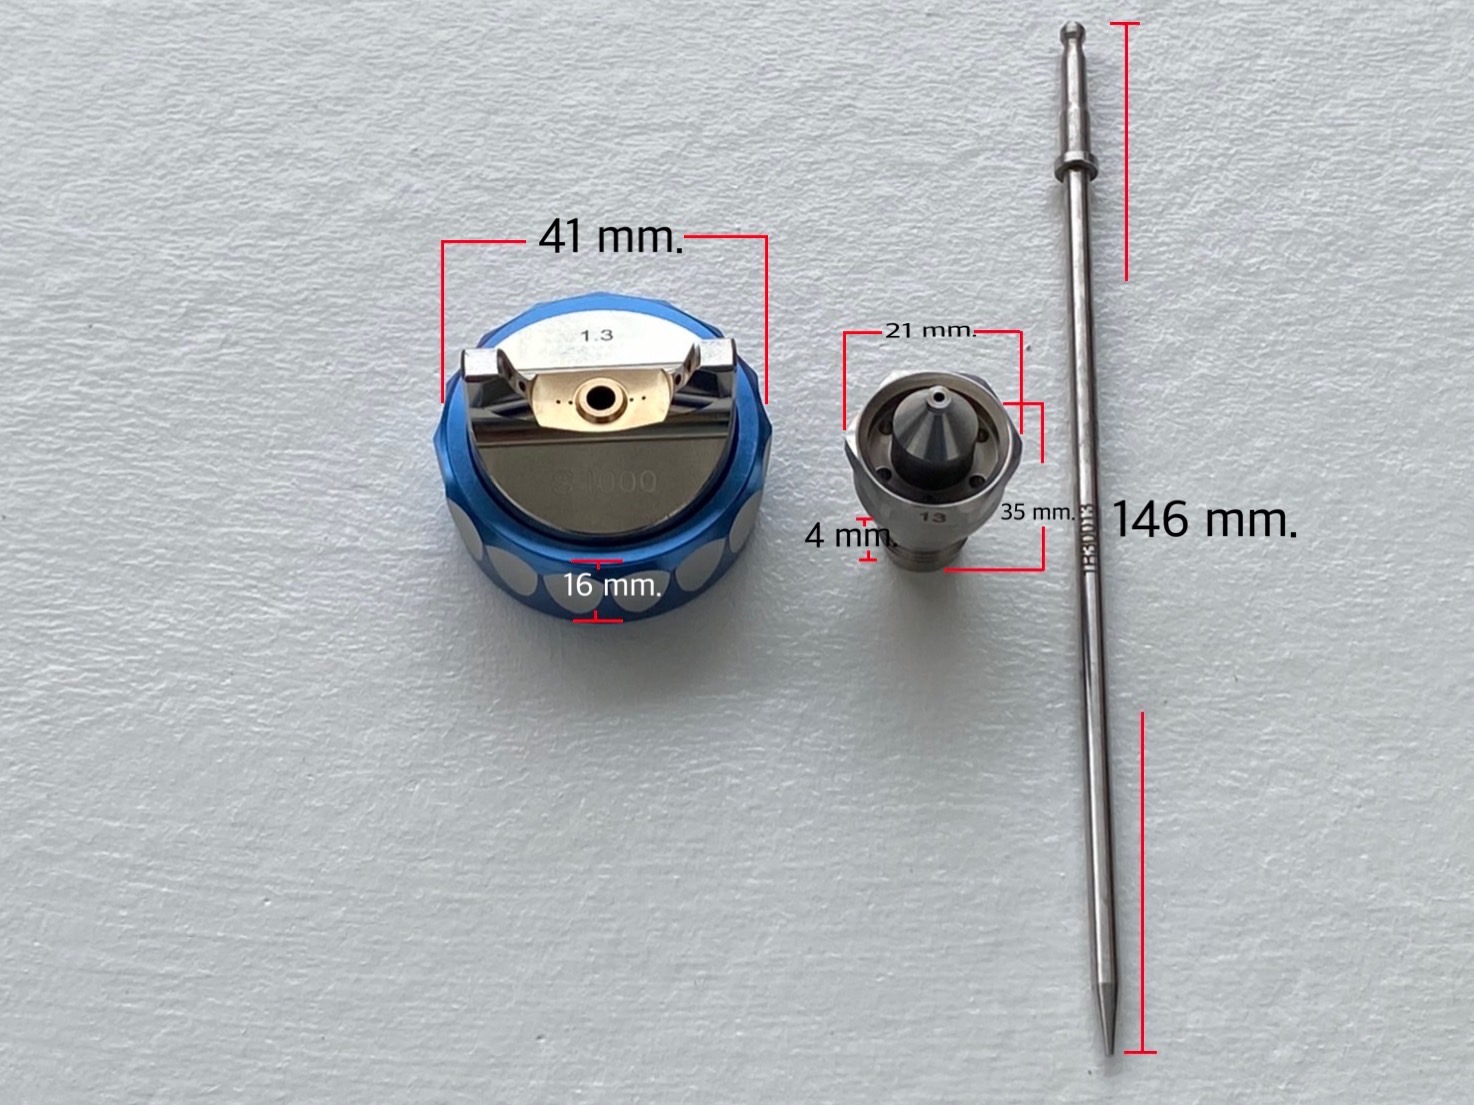 Nozzle Kit 1.3 mm. กาพ่นสี S4000